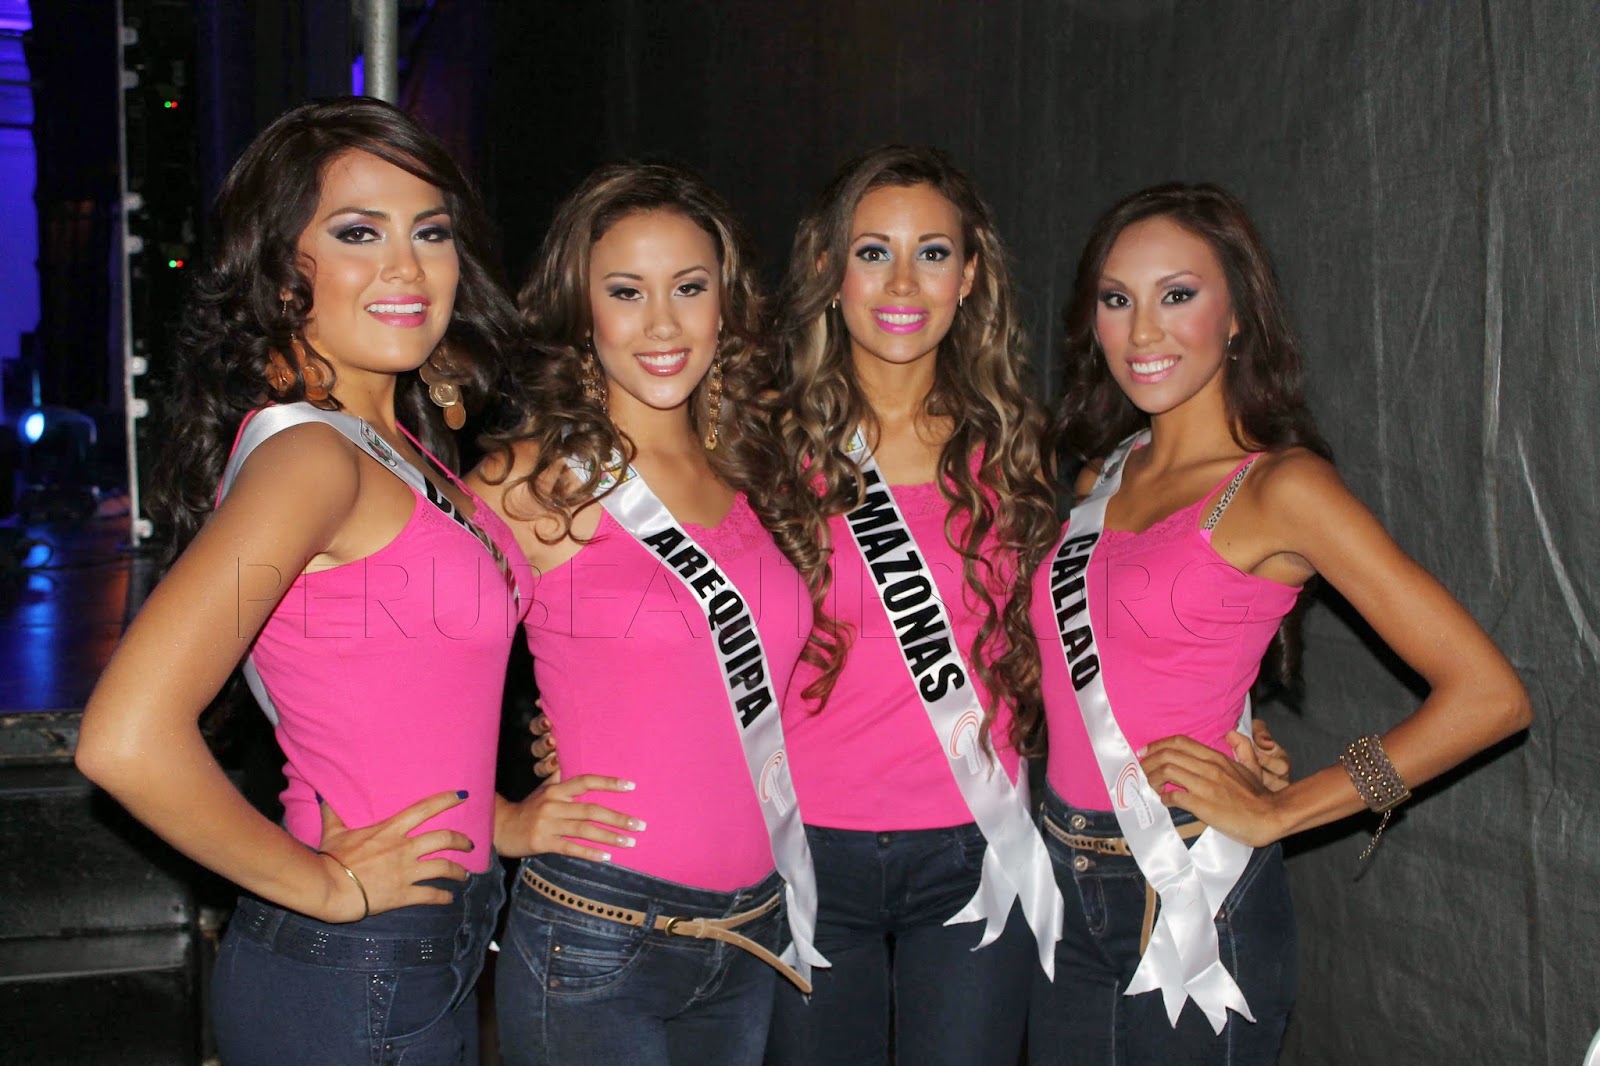 Road to Miss Peru Universe 2014 IMG_1095